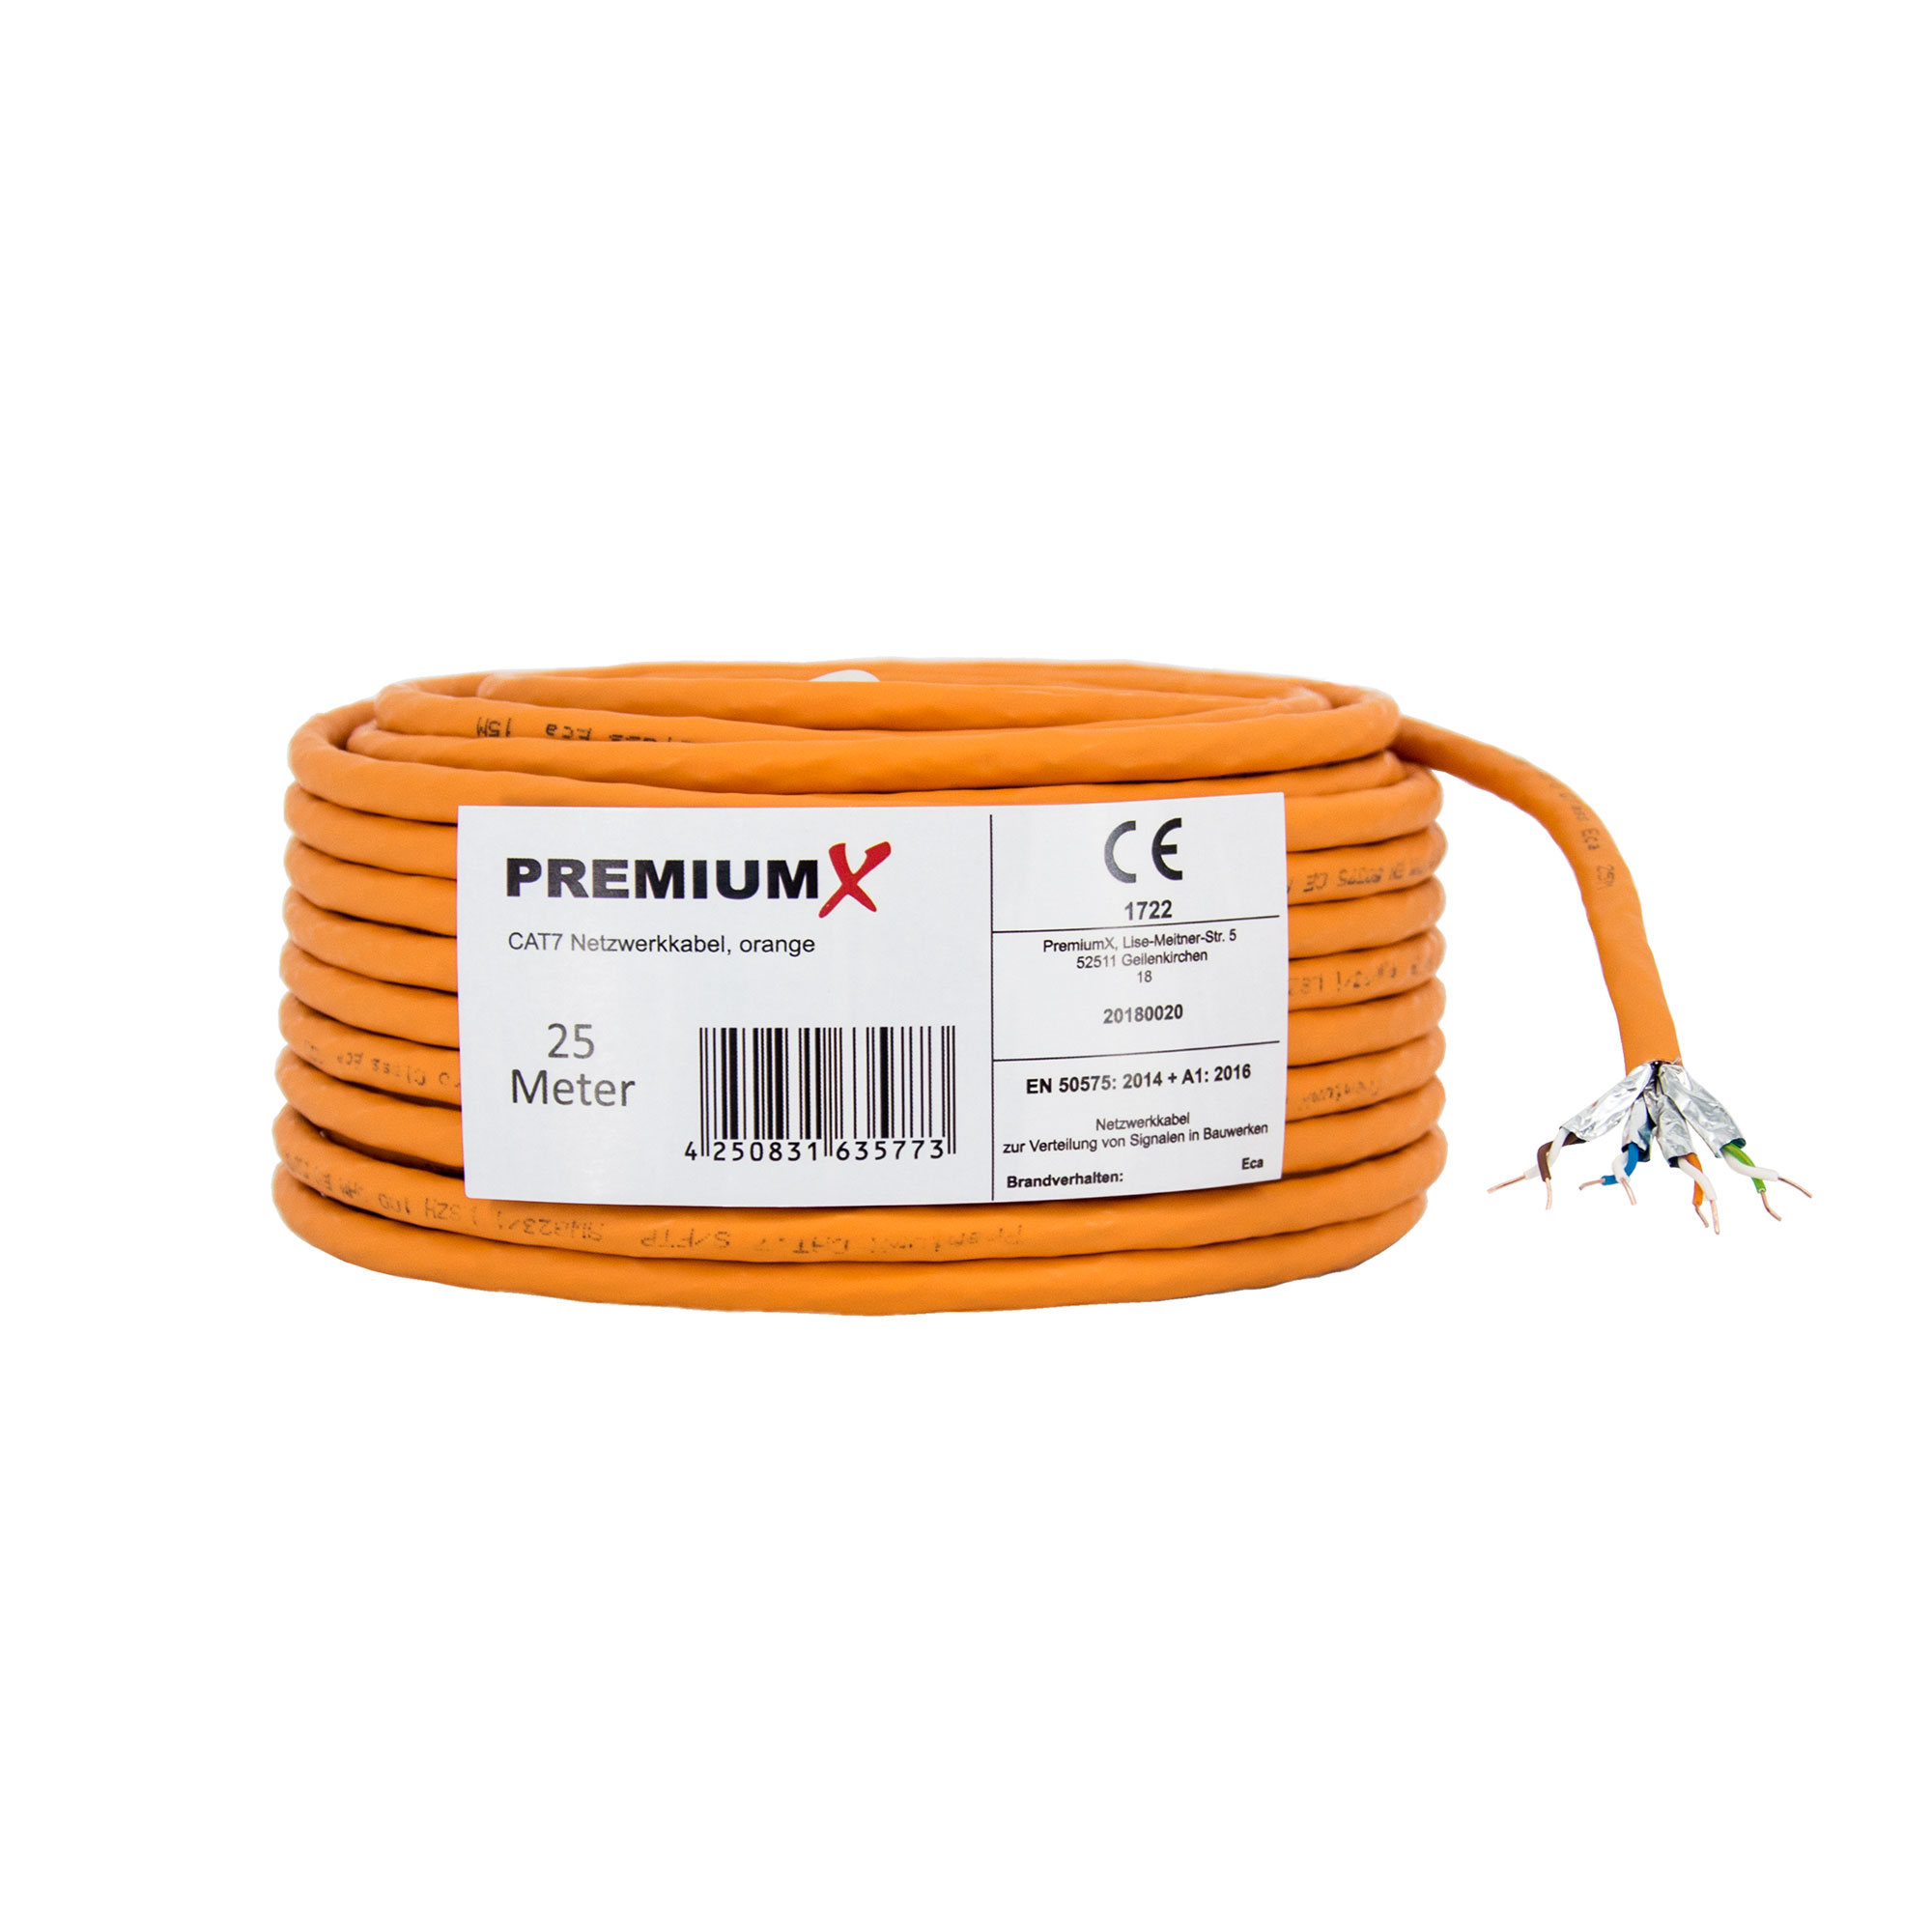 PREMIUMX 25m CAT 7 Netzwerkkabel LAN 25 Ethernet Netzwerkkabel, Simplex Kabel m Datenkabel